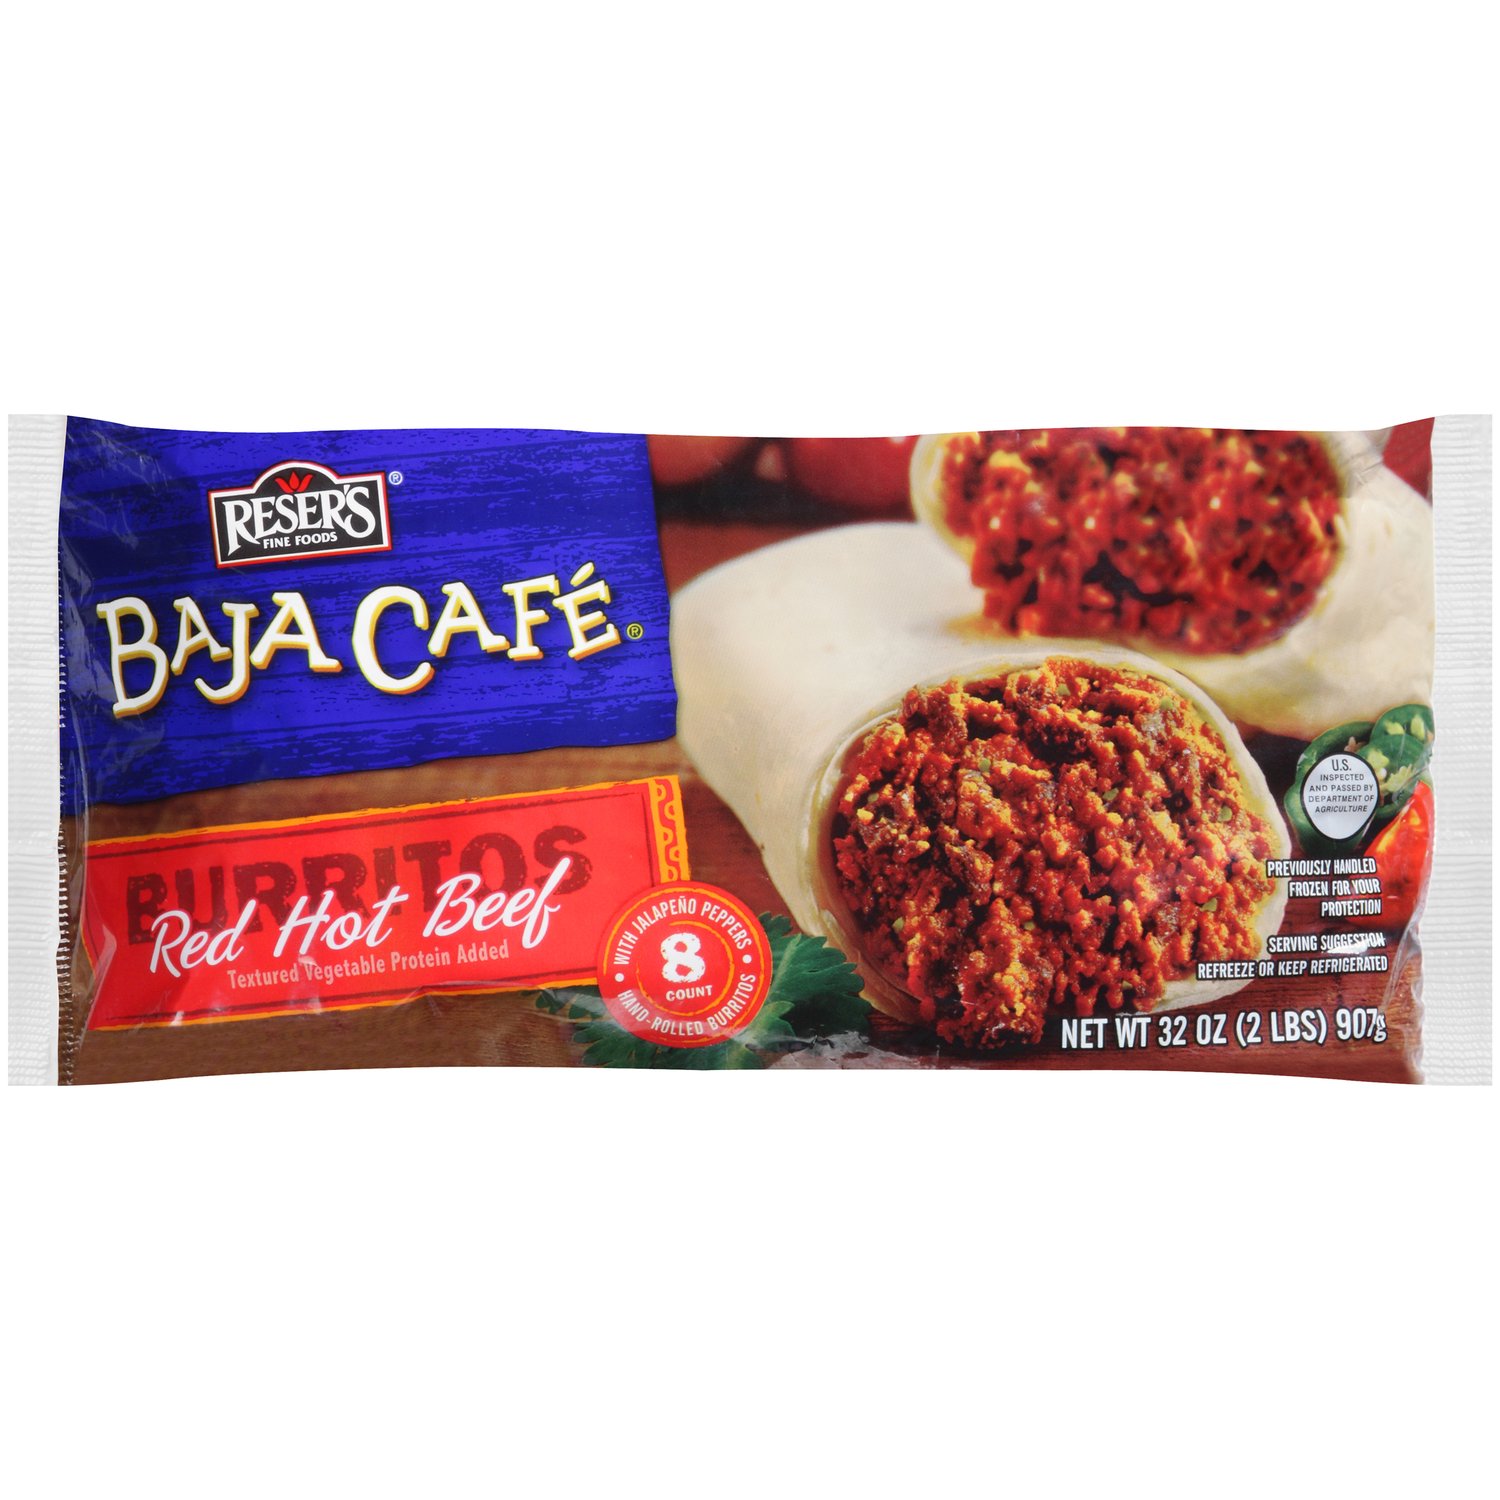 Baja Cafe Red Hot Beef Burritos - Foodland